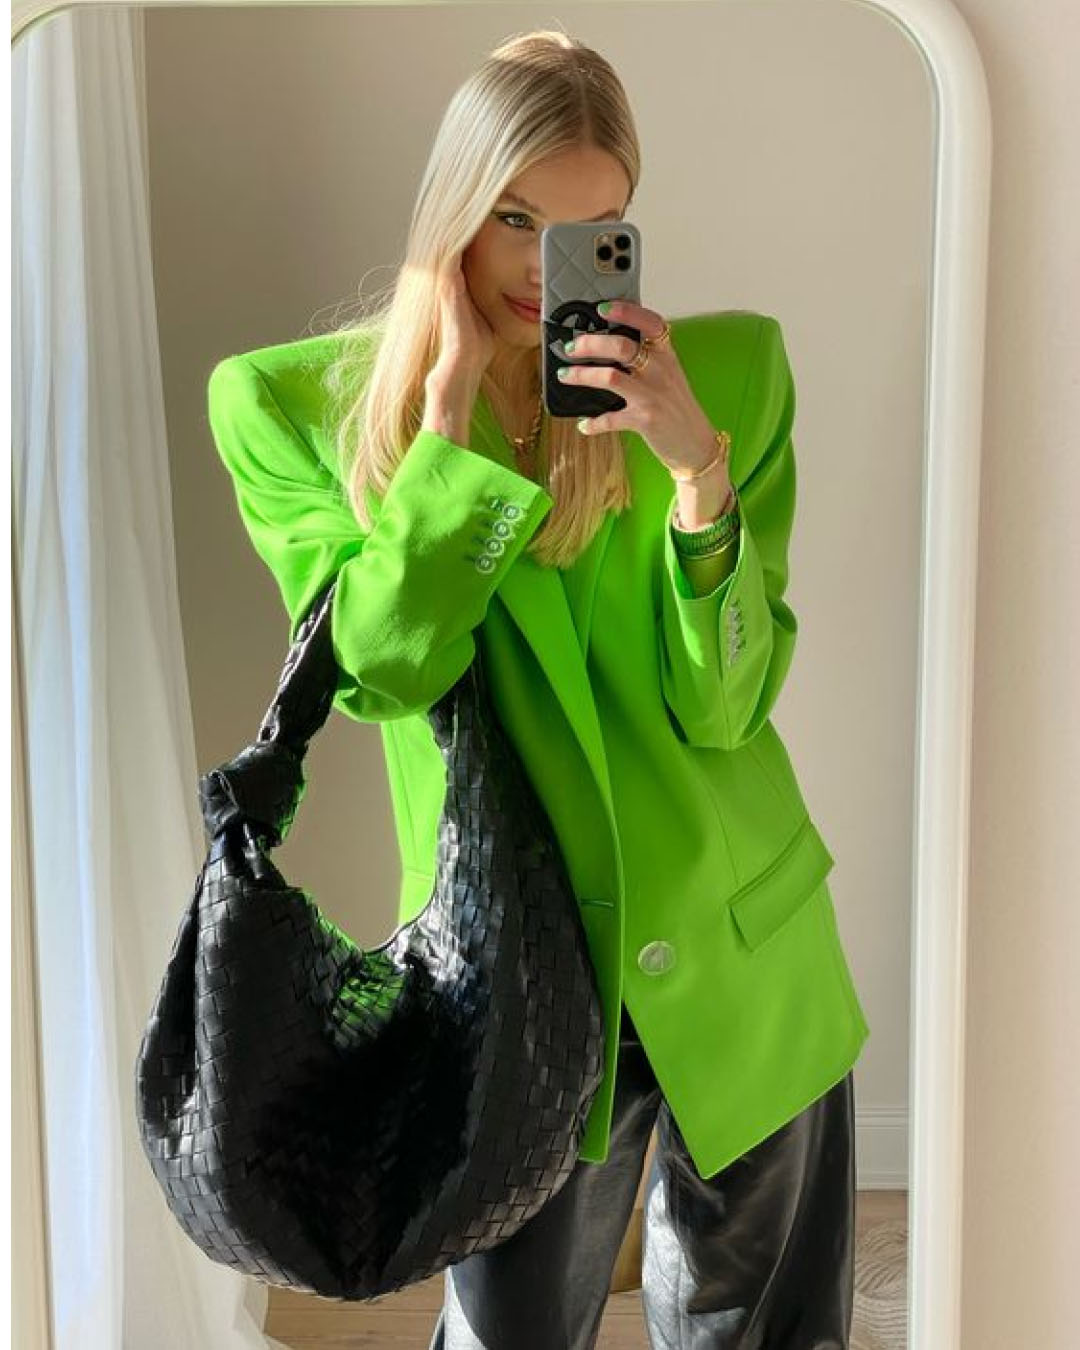 Leonie Hanne con blazer verde lime e maxi bag